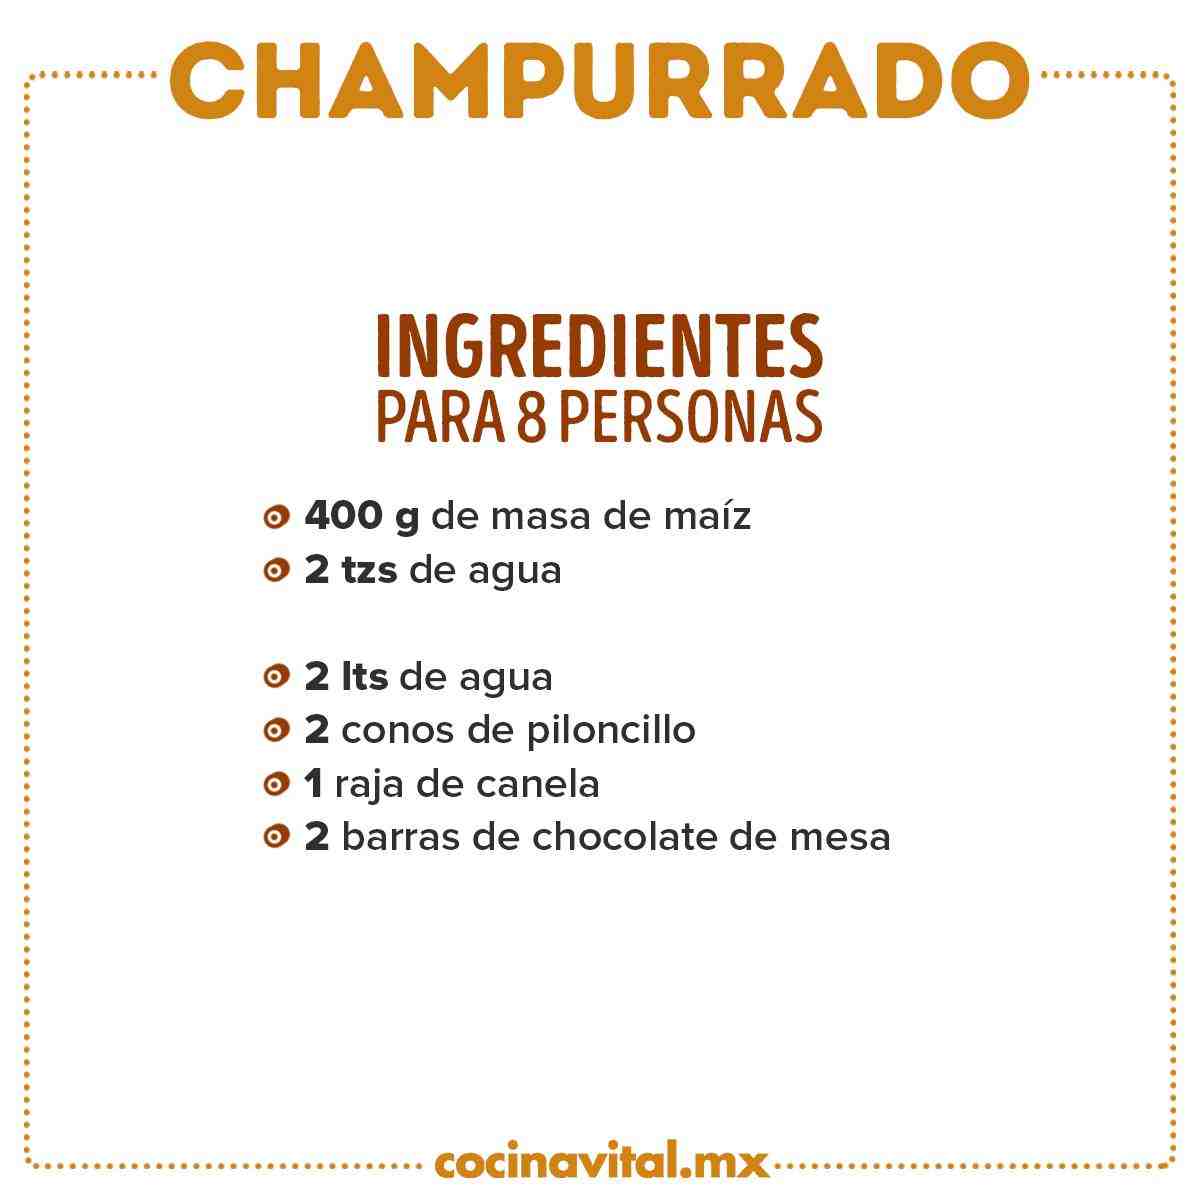 Ingredientes Champurrado